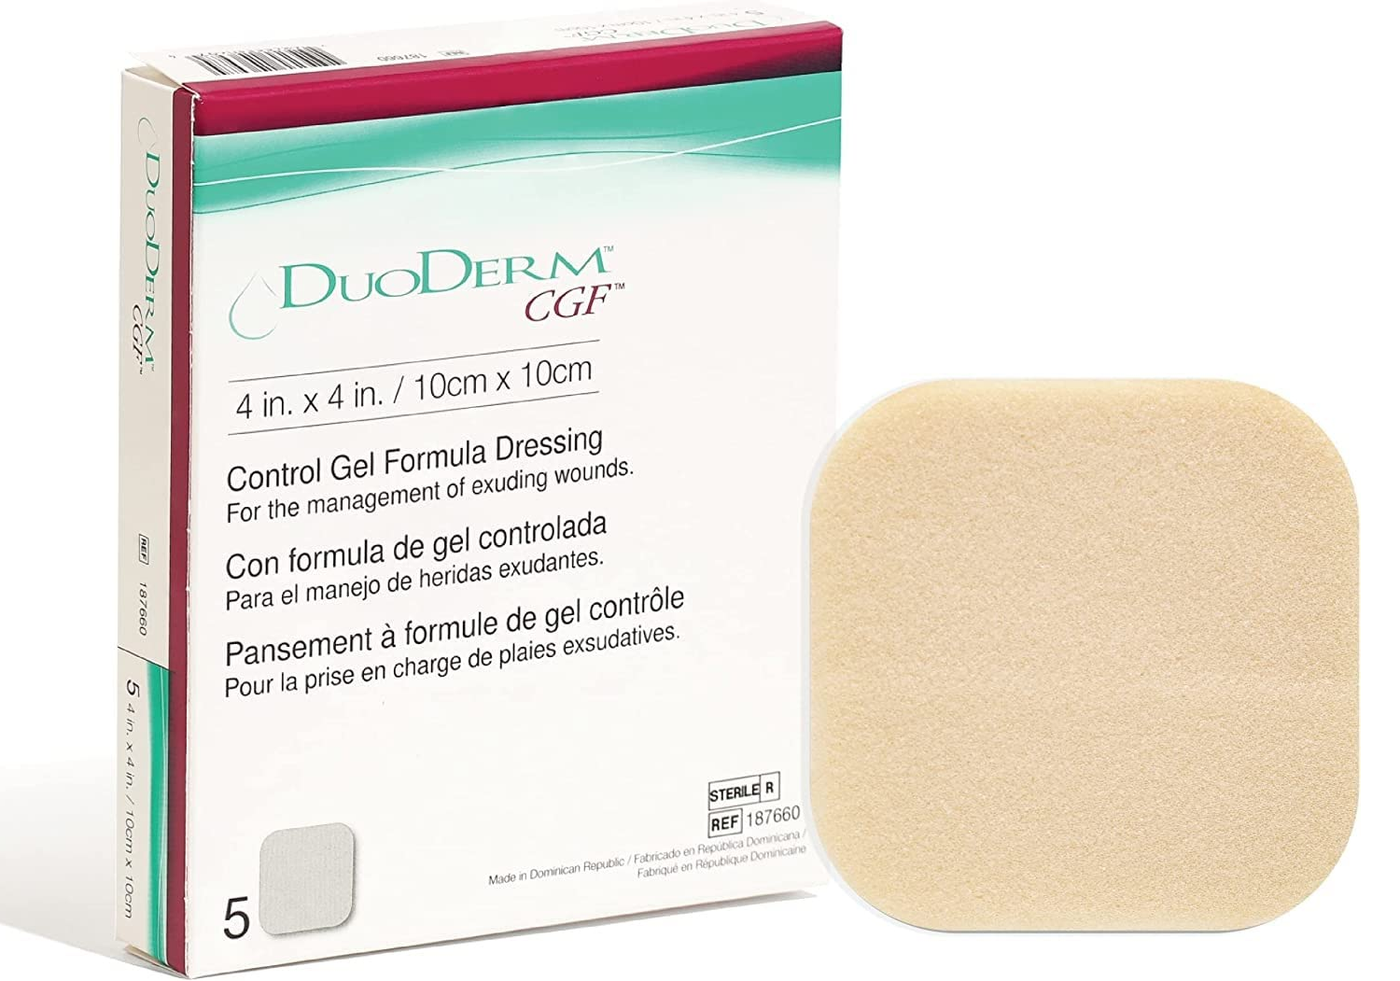 Duo Derm CGF (Control Gel Formula)  Sterile Dresssing 4Inch X 4Inch / 10cm X 10cm